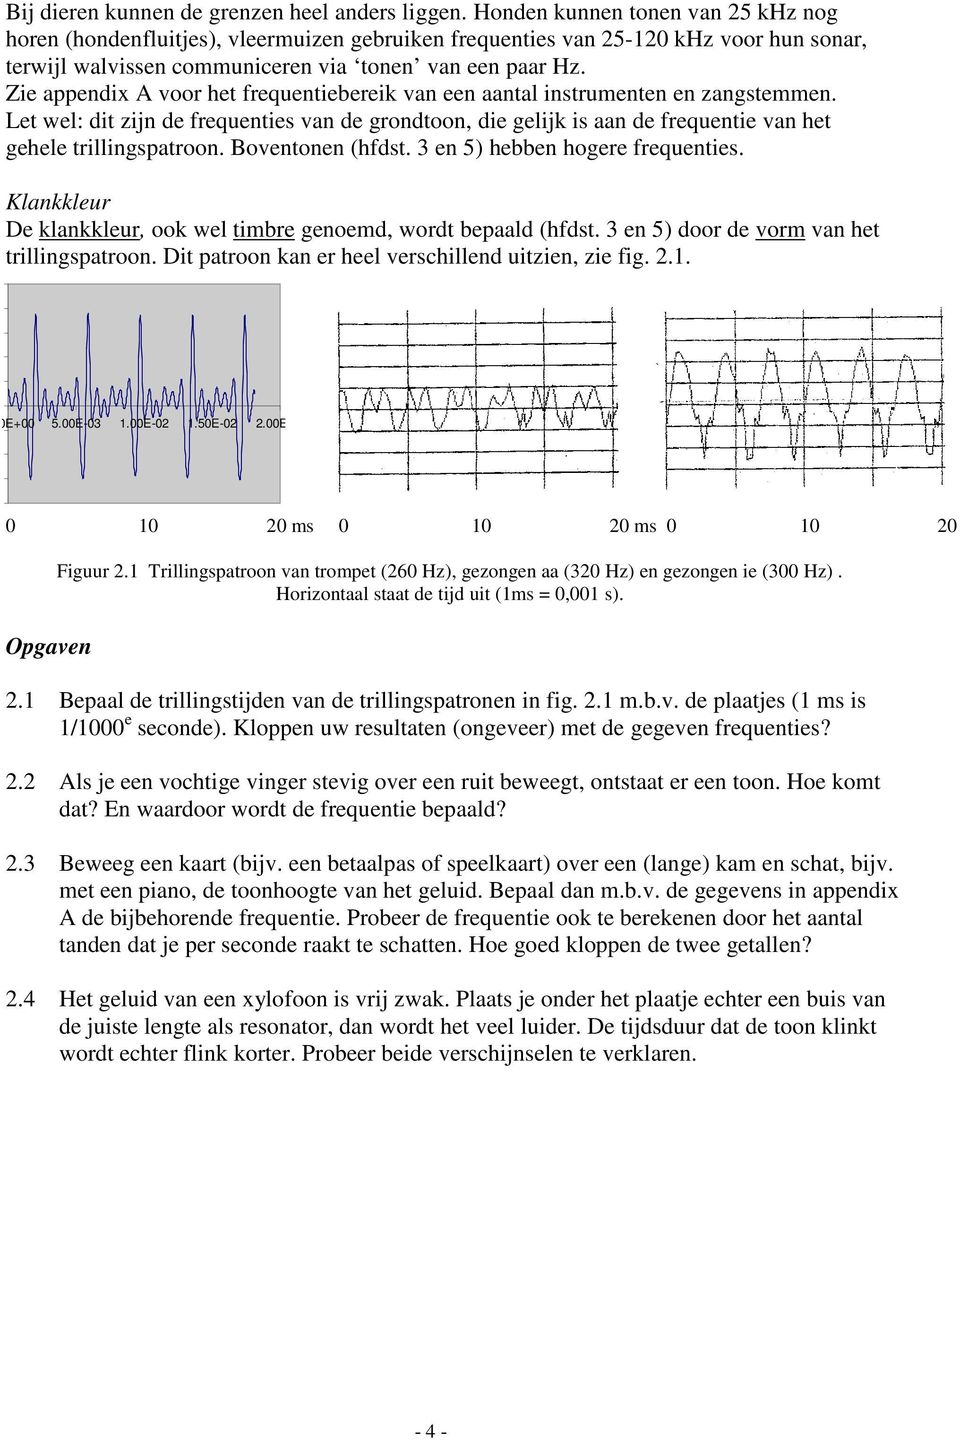 Zie appendix A voor het frequentiebereik van een aantal instrumenten en zangstemmen. Let wel: dit zijn de frequenties van de grondtoon, die gelijk is aan de frequentie van het gehele trillingspatroon.